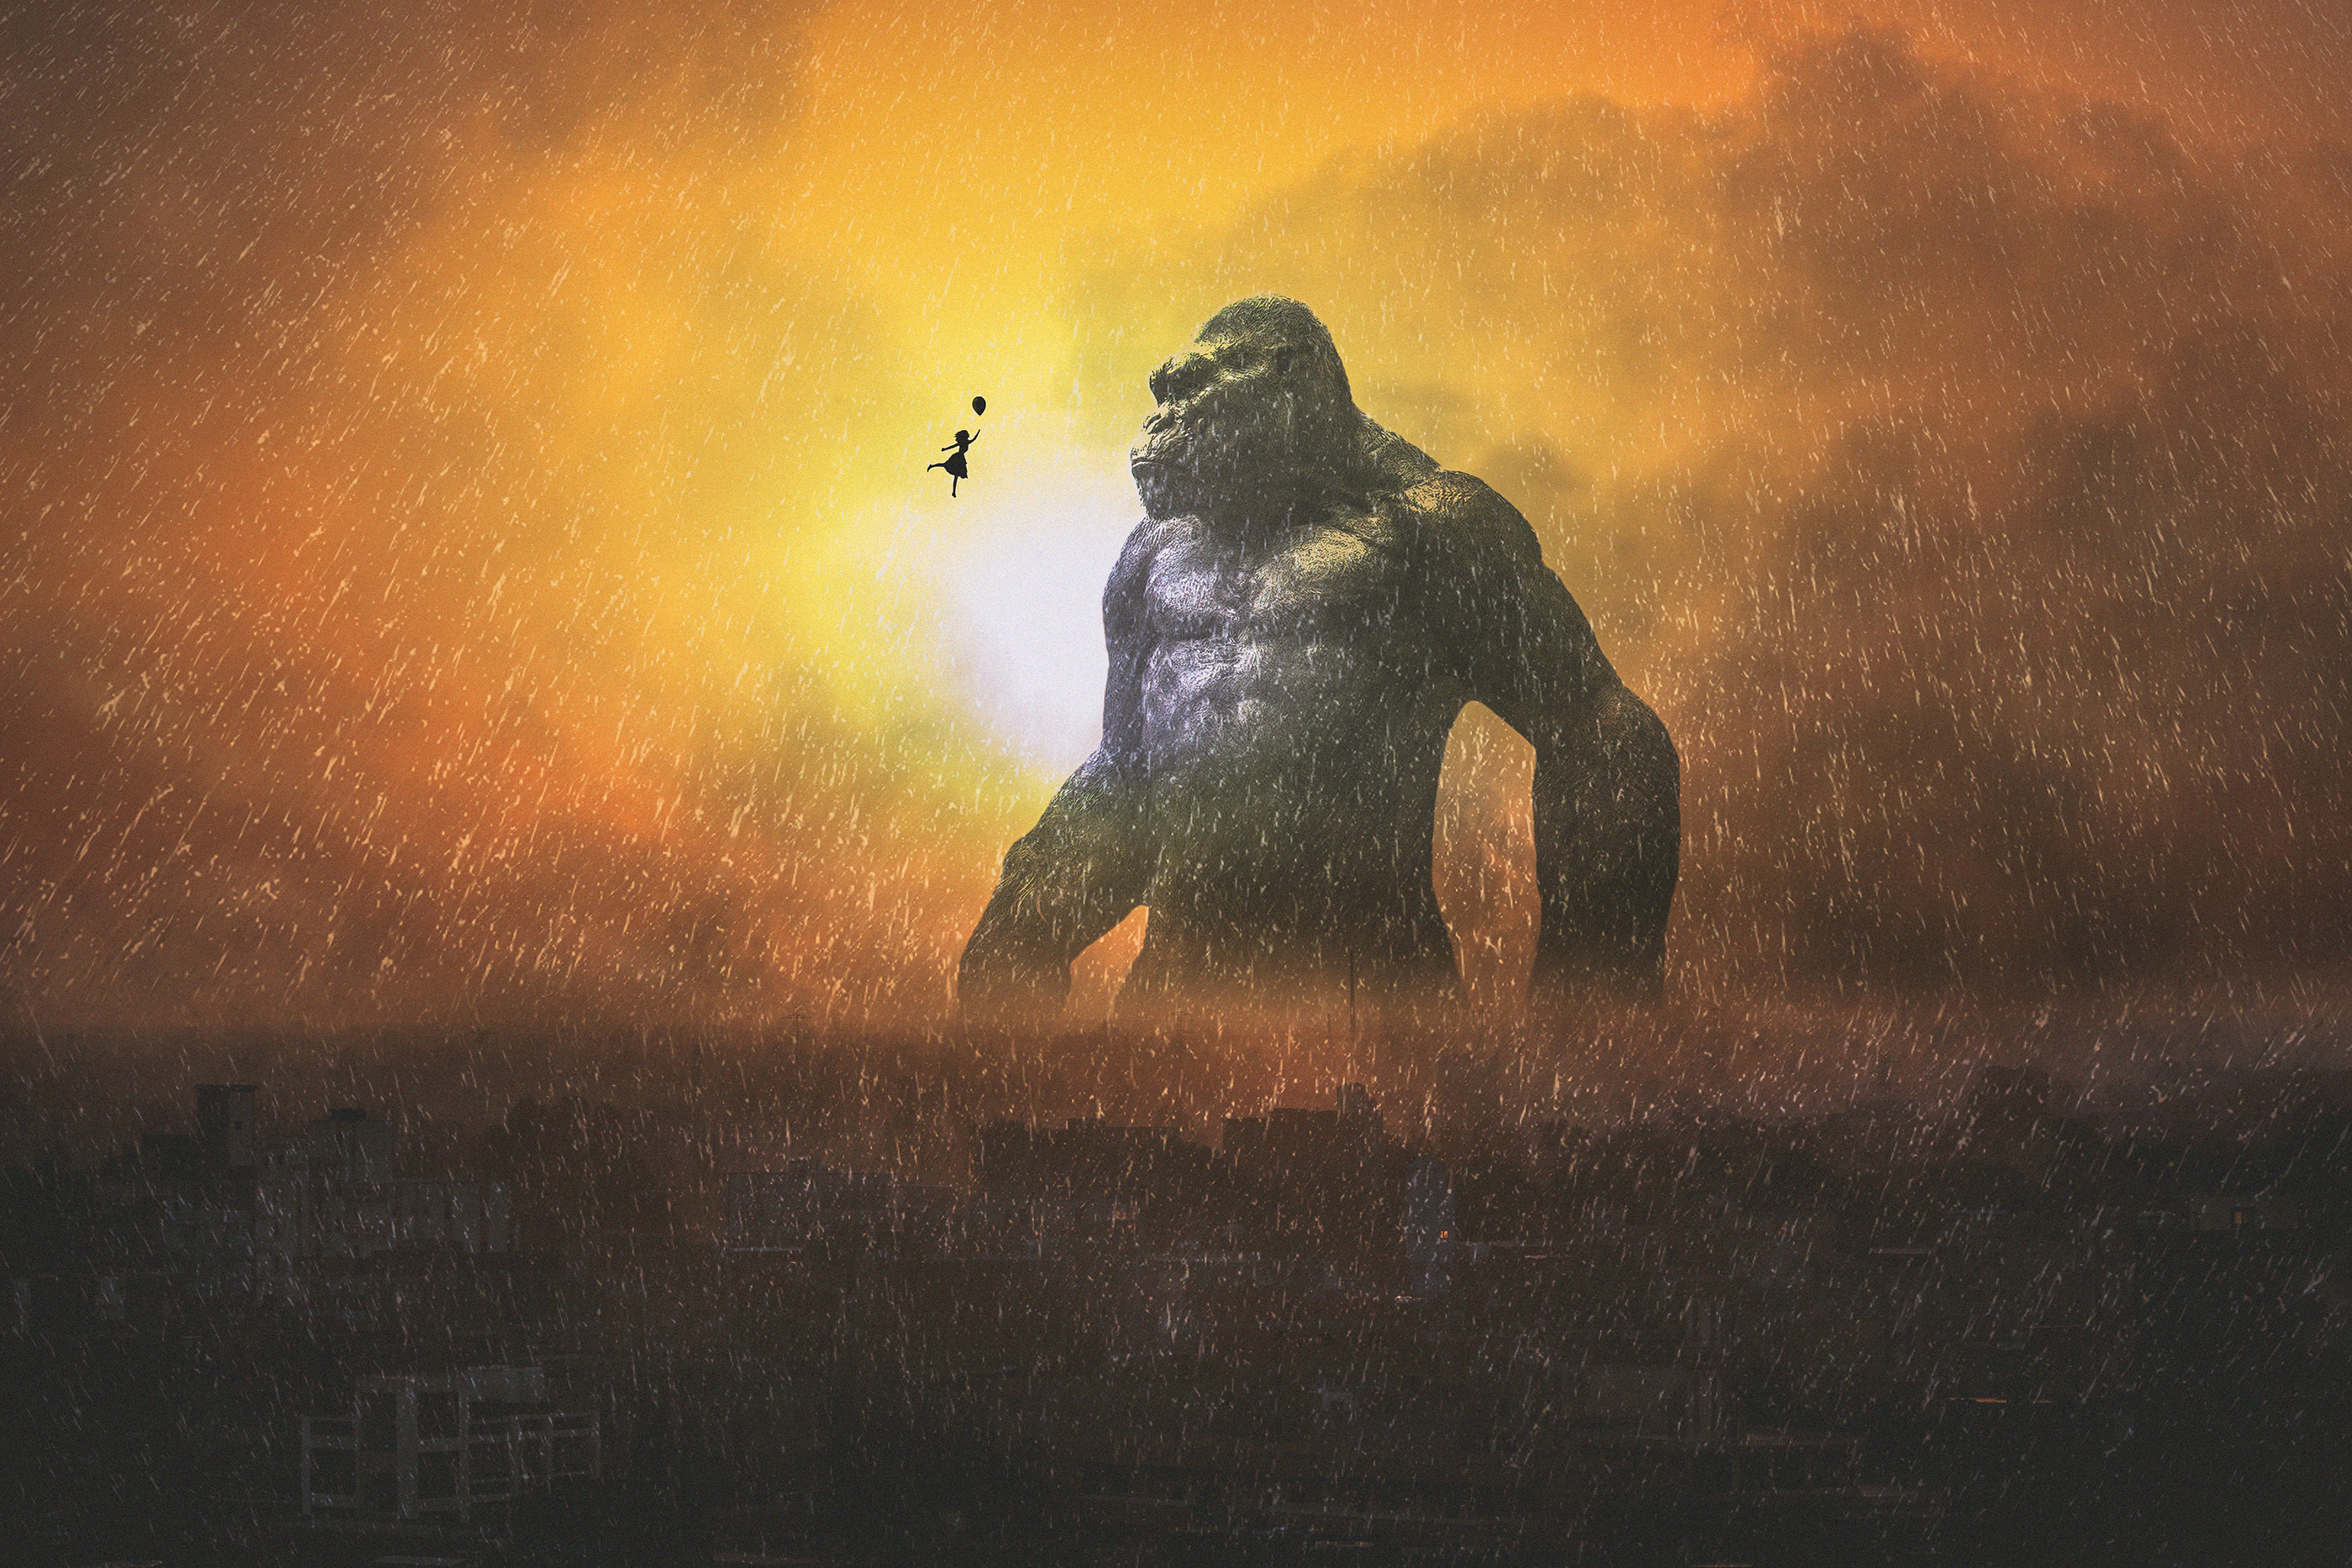 Godzilla Vs Kong Wallpapers - Top Những Hình Ảnh Đẹp